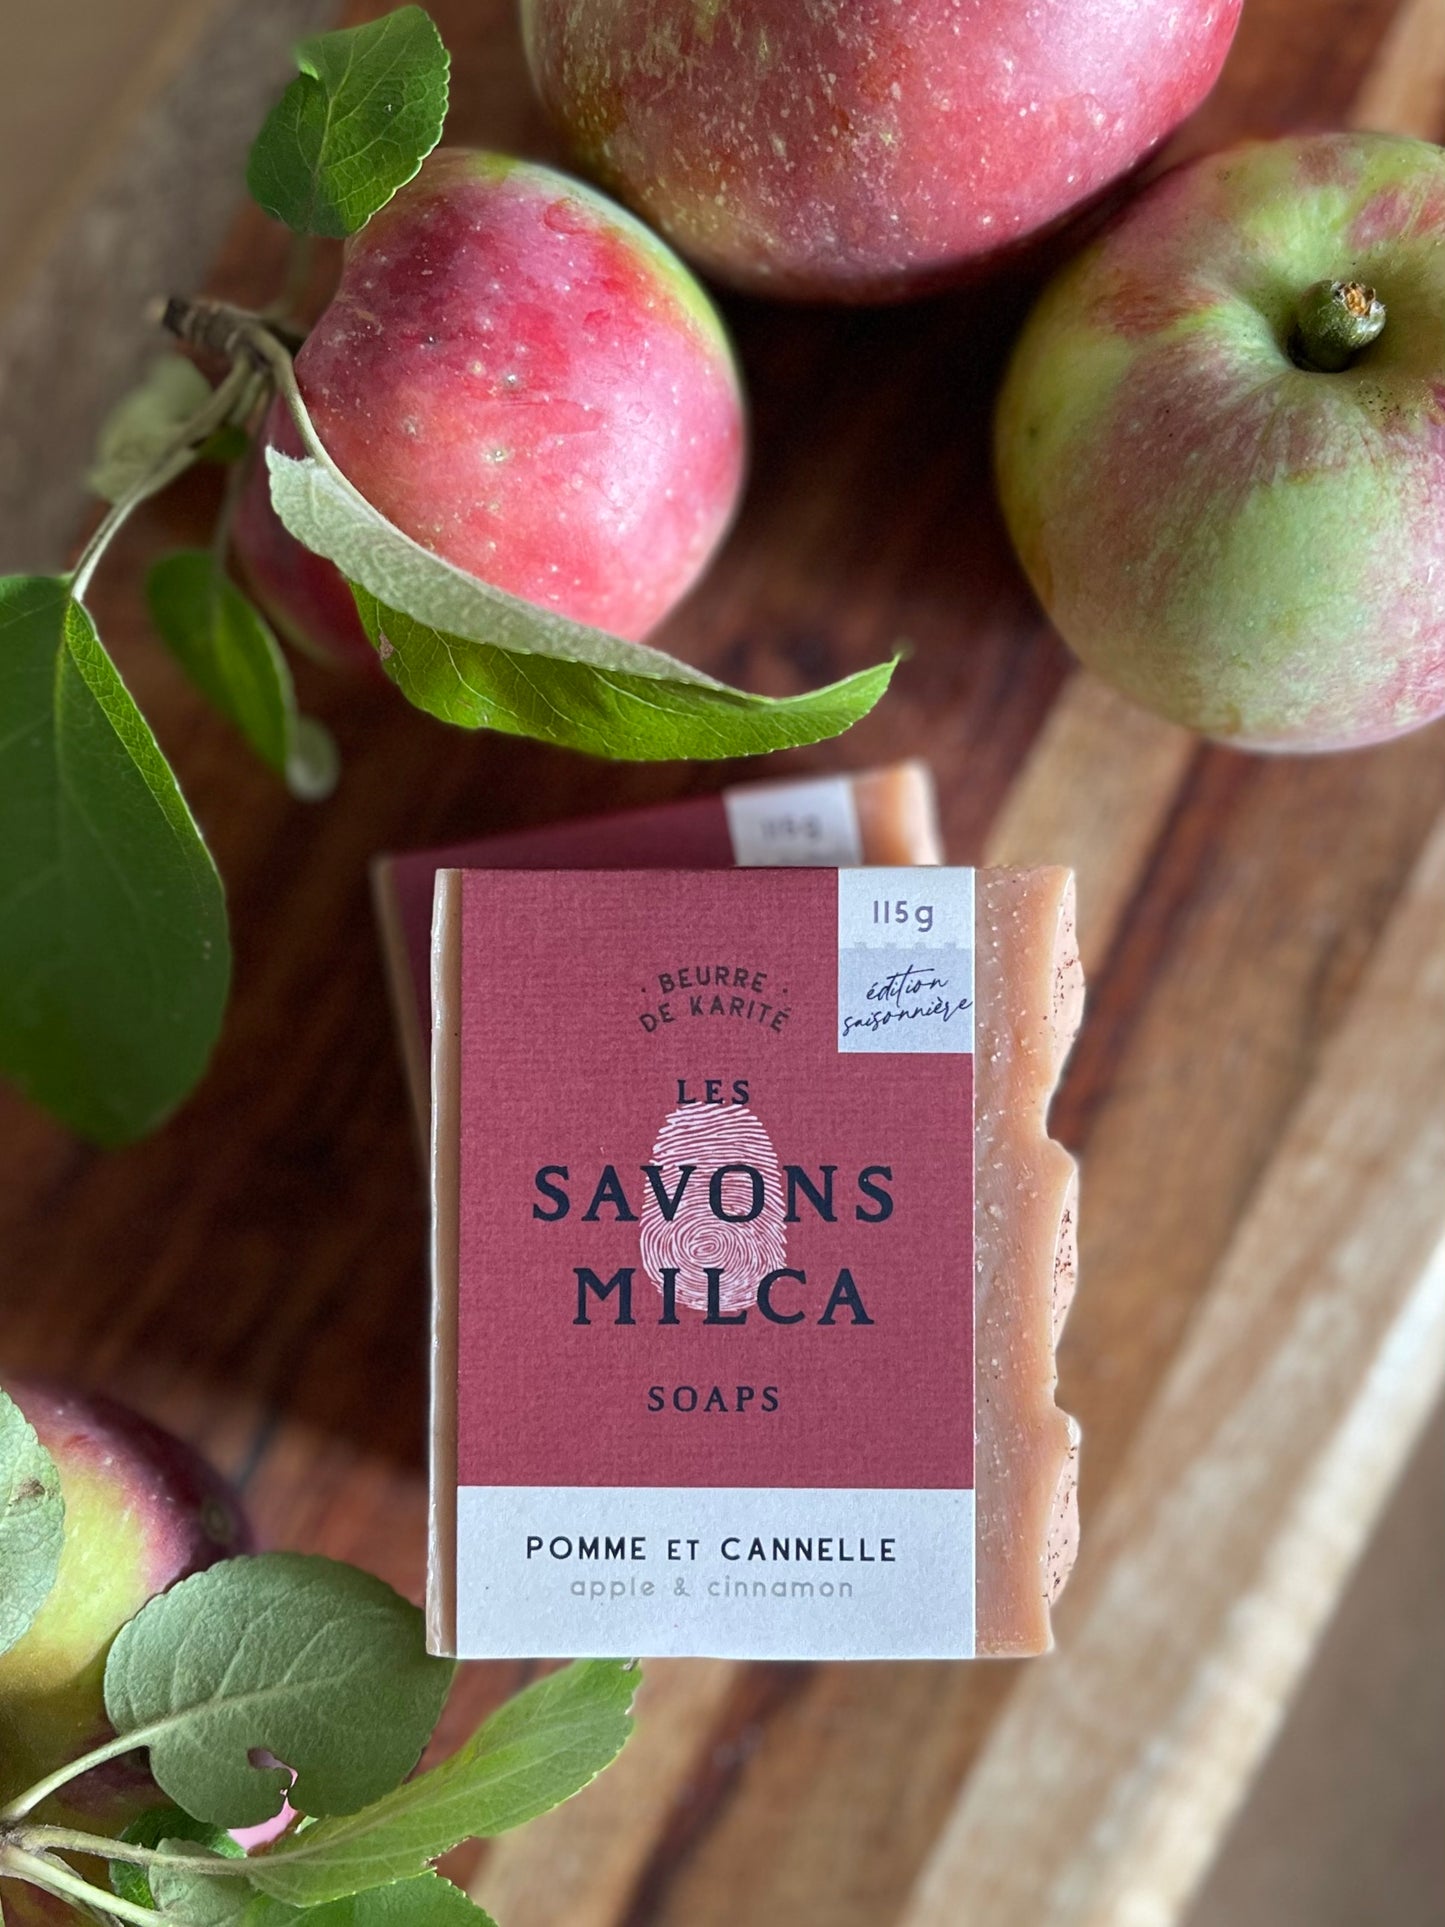 - Savon - Pomme et cannelle / Apple & cinnamon soap